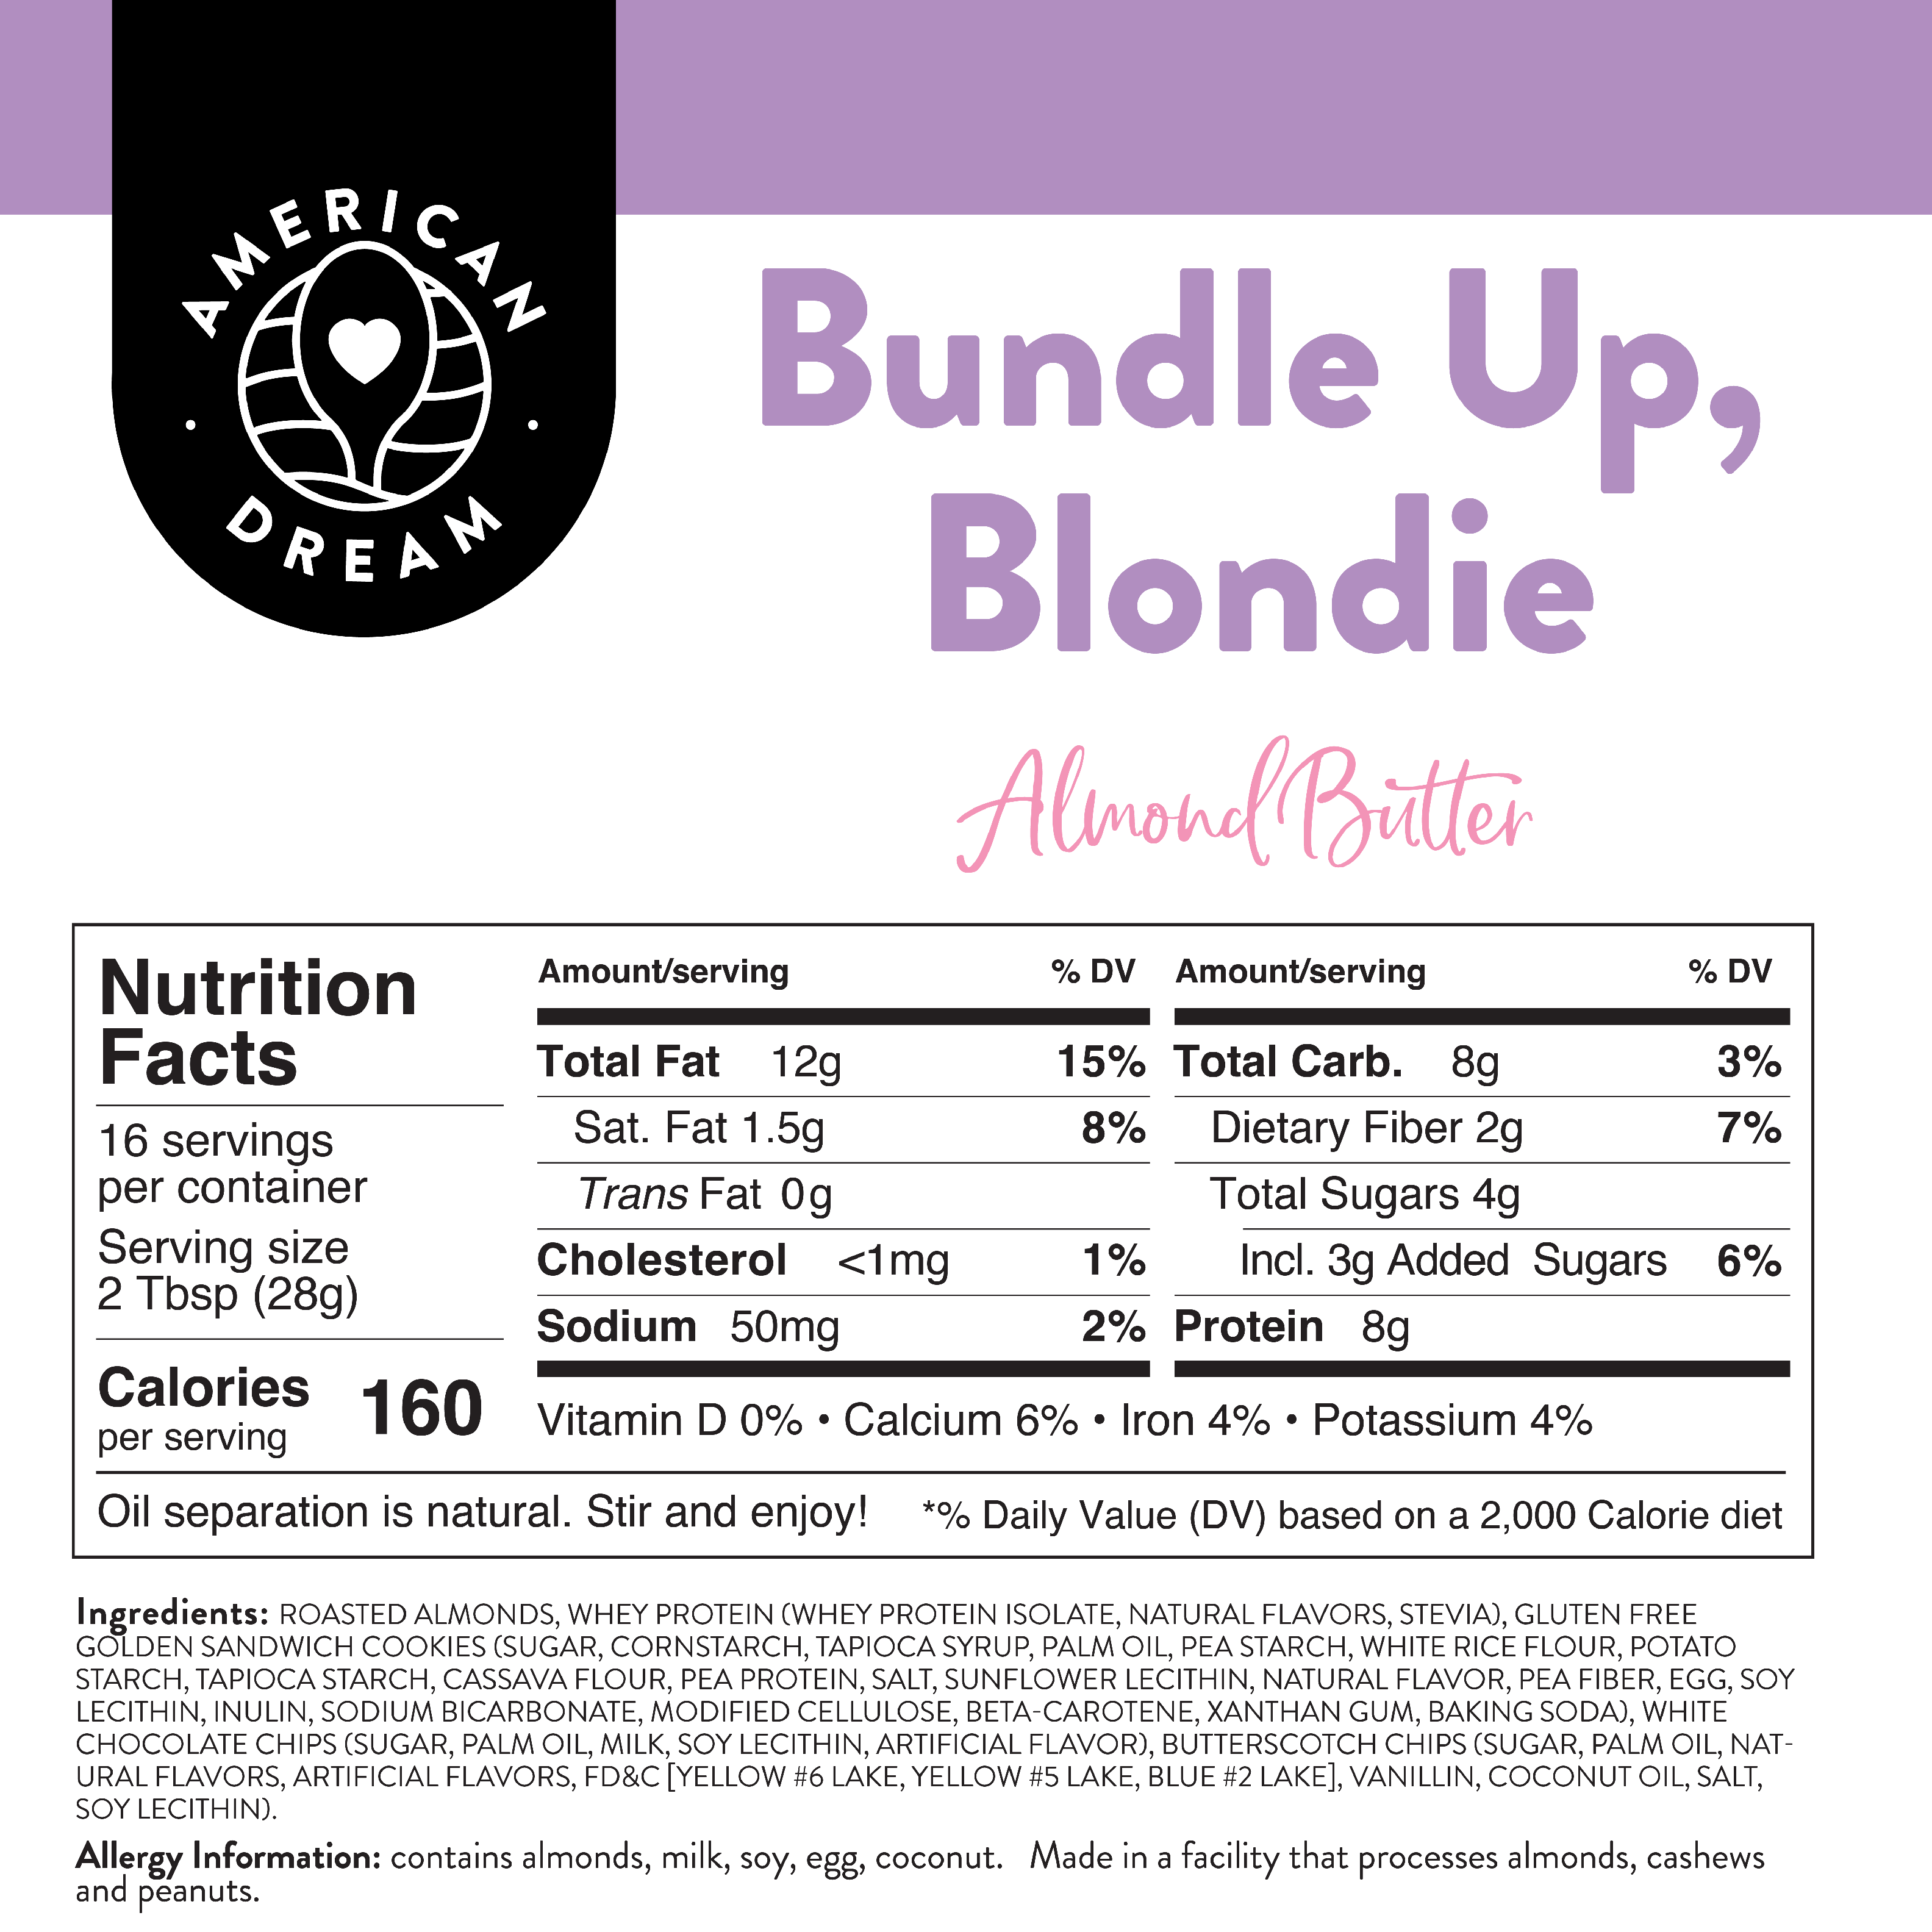 Gluten-Free Bundle Up Blondie Almond Butter